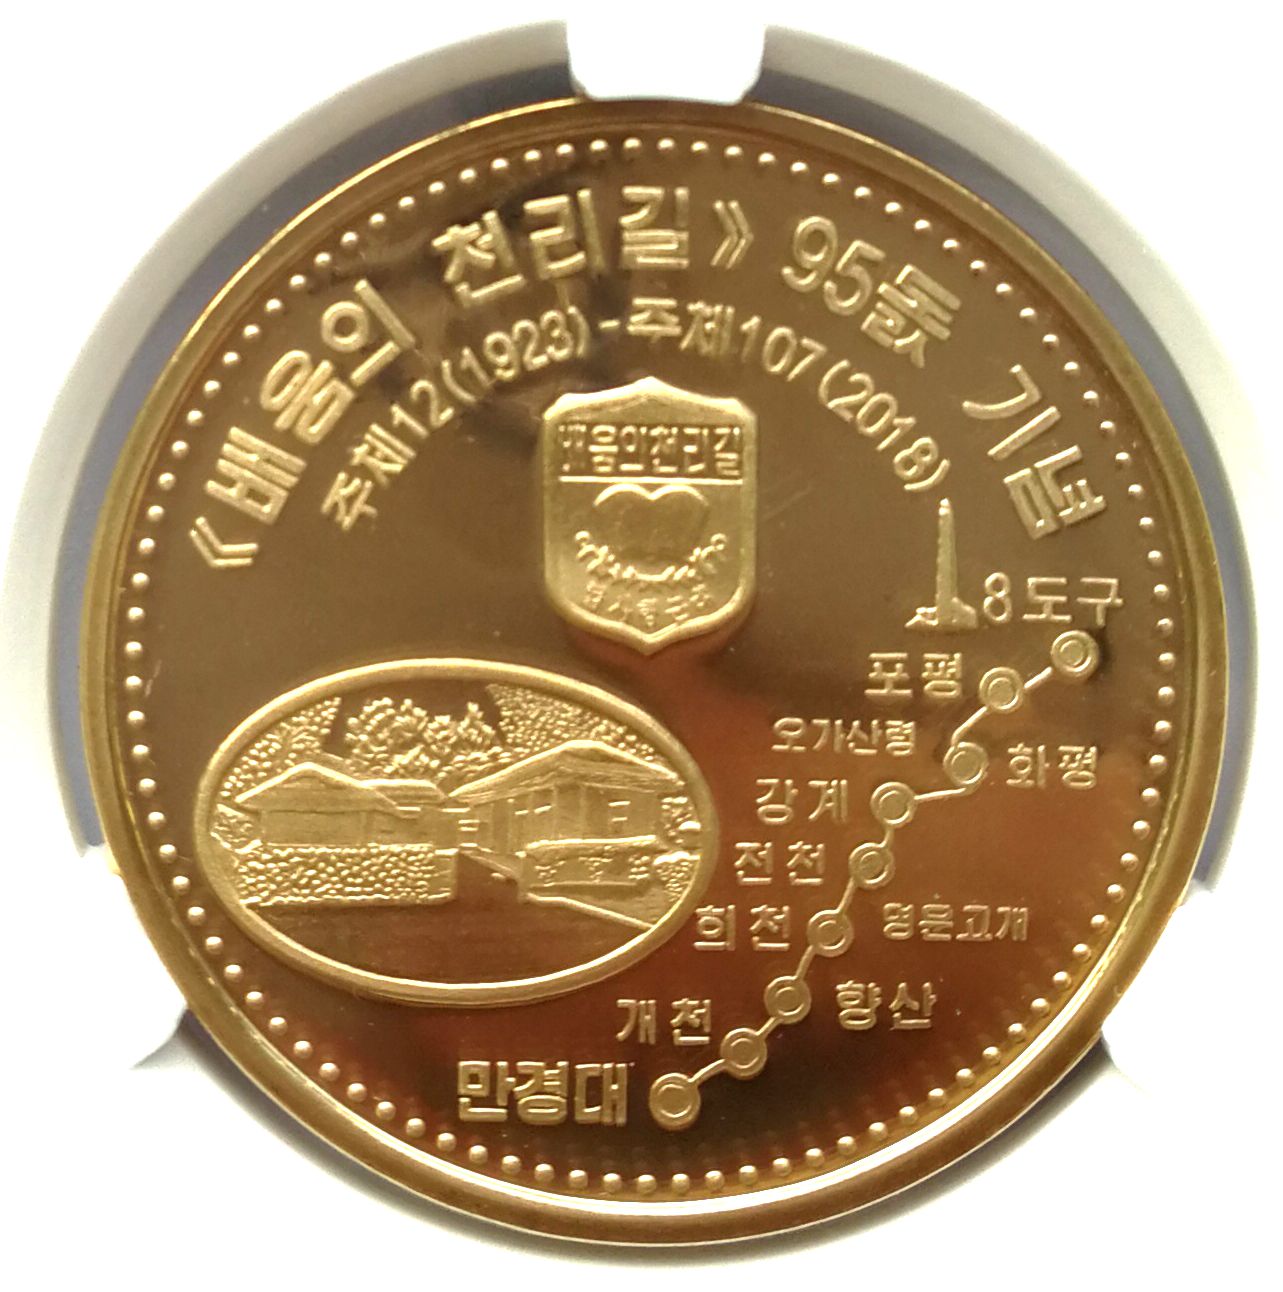 L3363, Korea "Kim's Journey for Learning, 95th Anni." Brass Coin 2018, Korean Grade